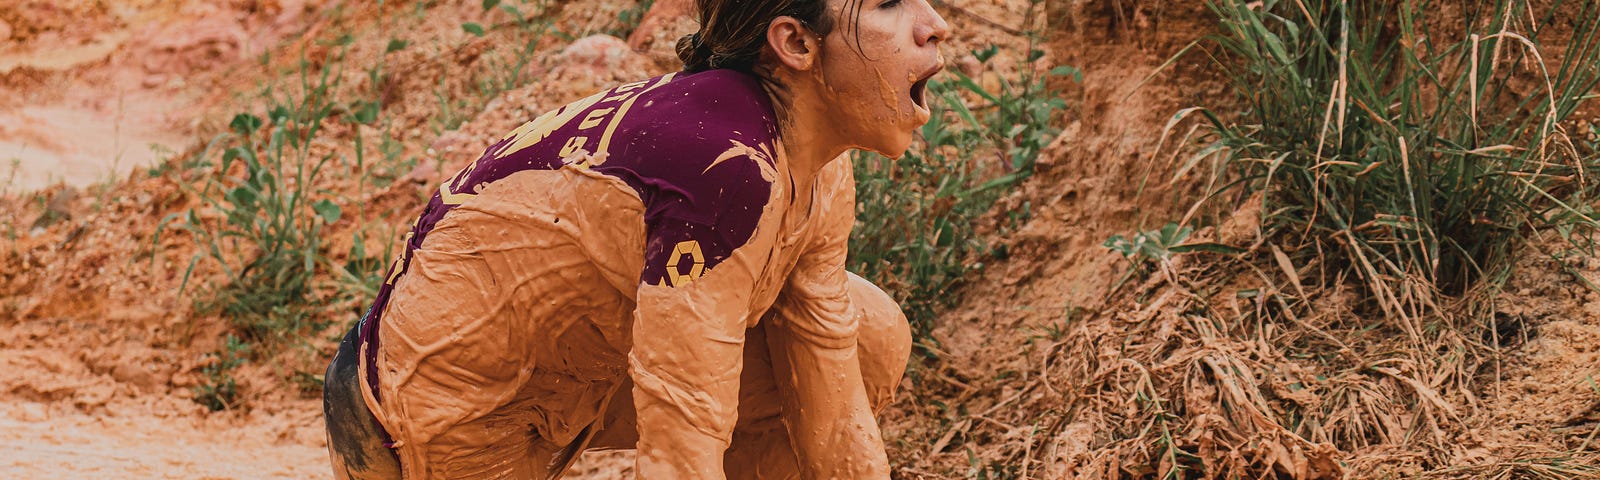 Woman crawling through the orange-brown mud.